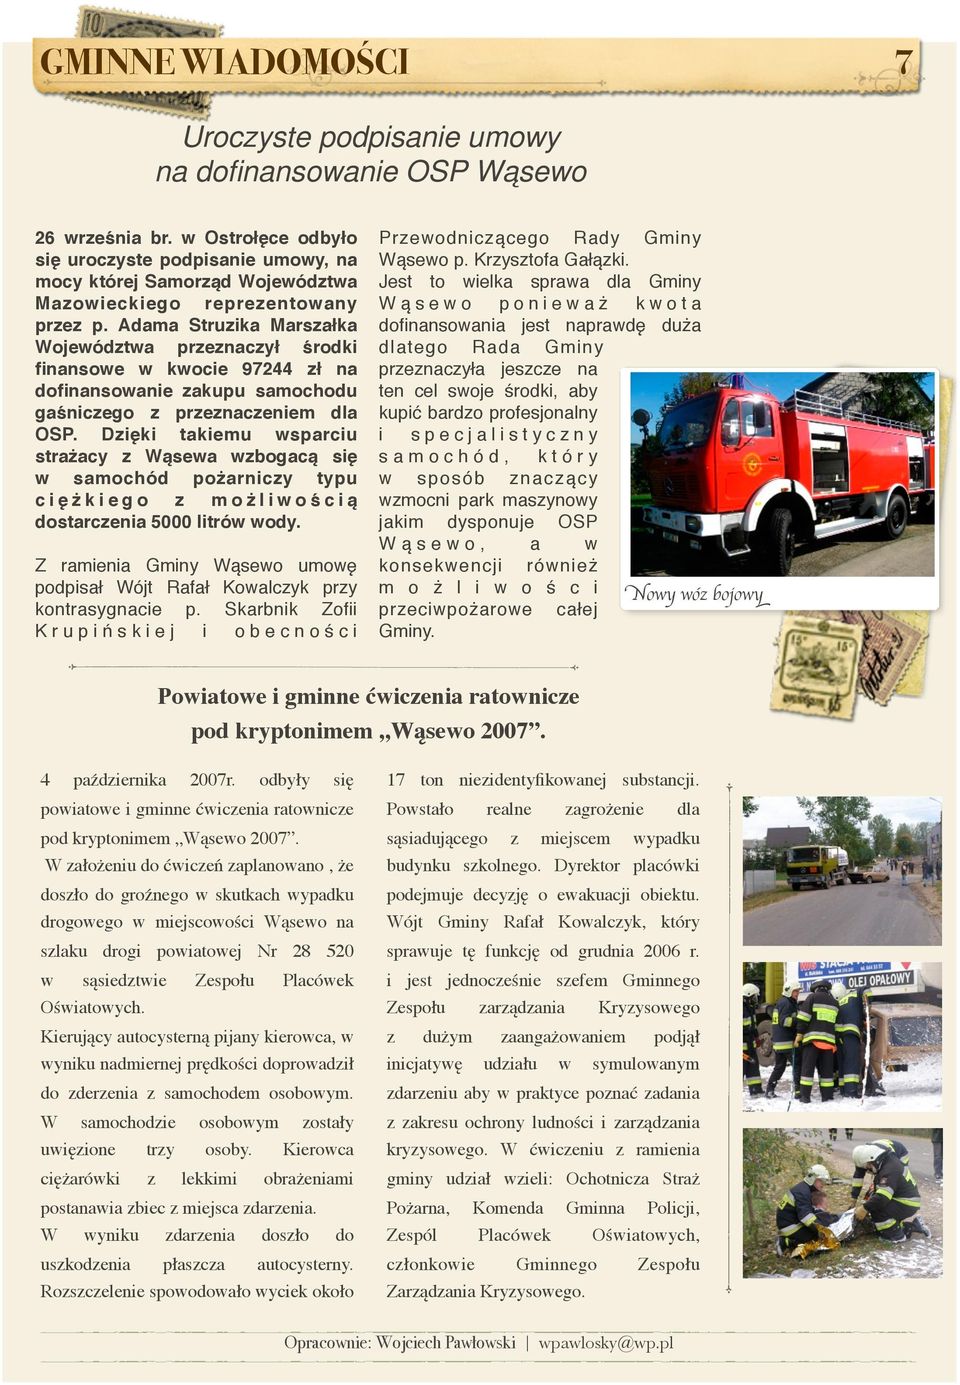 Adama Struzika Marszałka Województwa przeznaczył środki finansowe w kwocie 97244 zł na dofinansowanie zakupu samochodu gaśniczego z przeznaczeniem dla OSP.